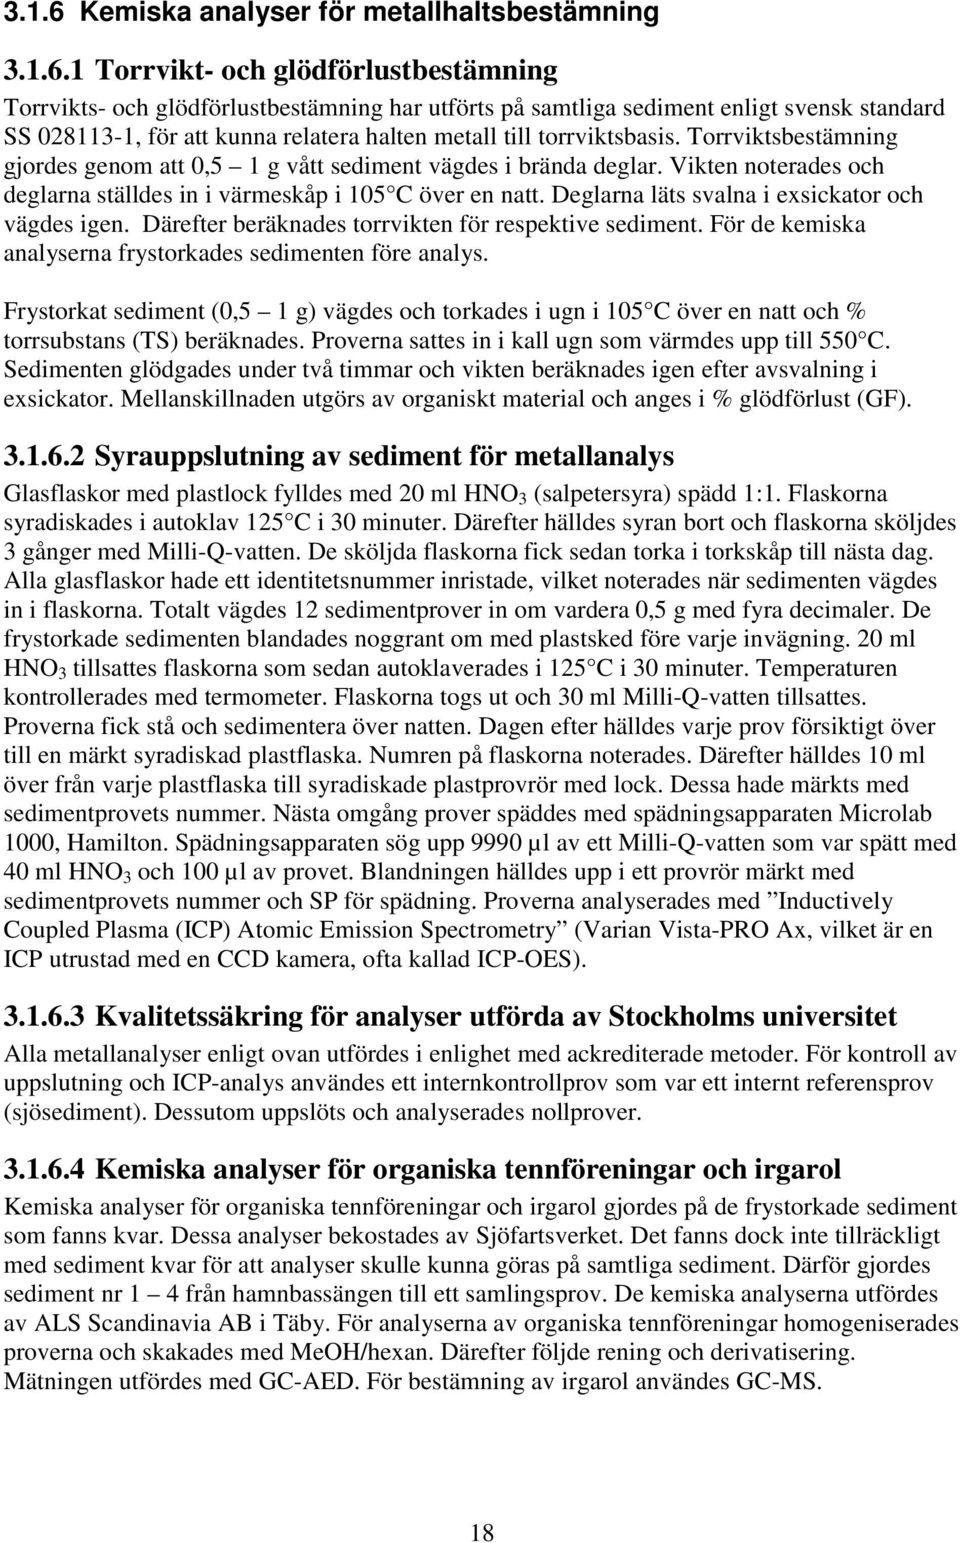 1 Torrvikt- och glödförlustbestämning Torrvikts- och glödförlustbestämning har utförts på samtliga sediment enligt svensk standard SS 028113-1, för att kunna relatera halten metall till